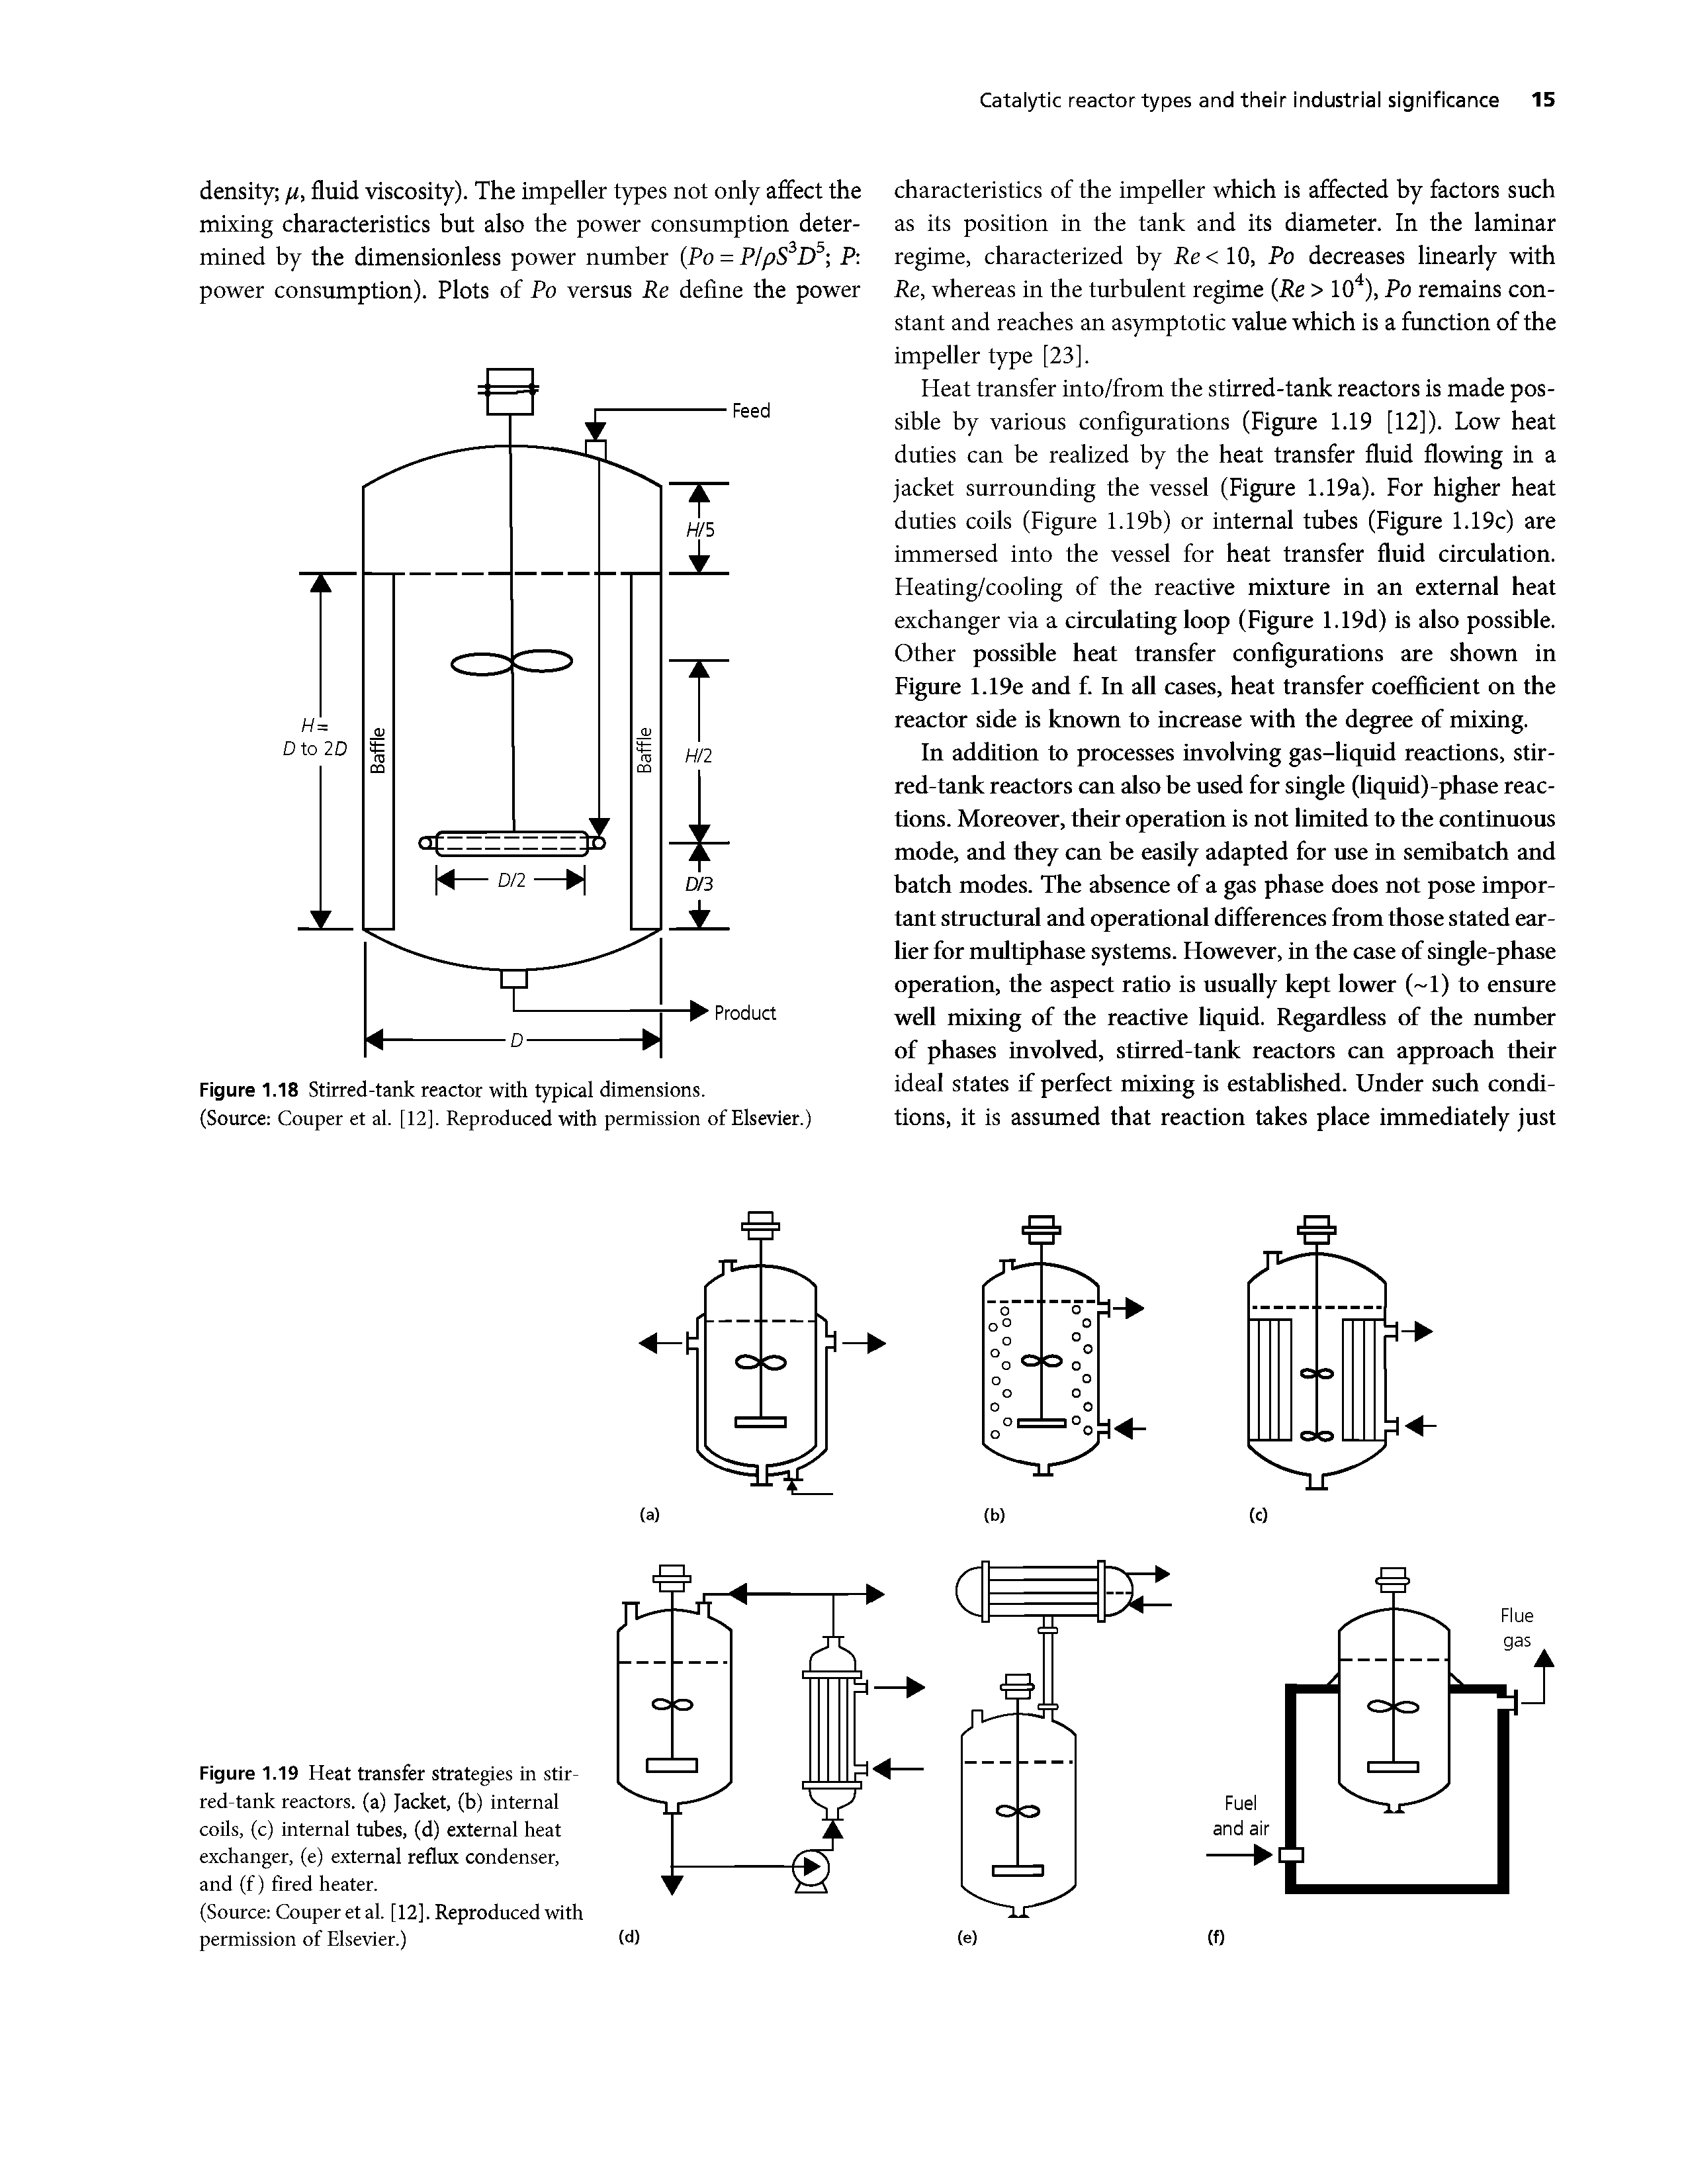 Figure 1.19 Heat transfer strategies in stirred-tank reactors, (a) Jacket, (b) internal coils, (c) internal tubes, (d) external heat exchanger, (e) external reflux condenser, and (f) fired heater.